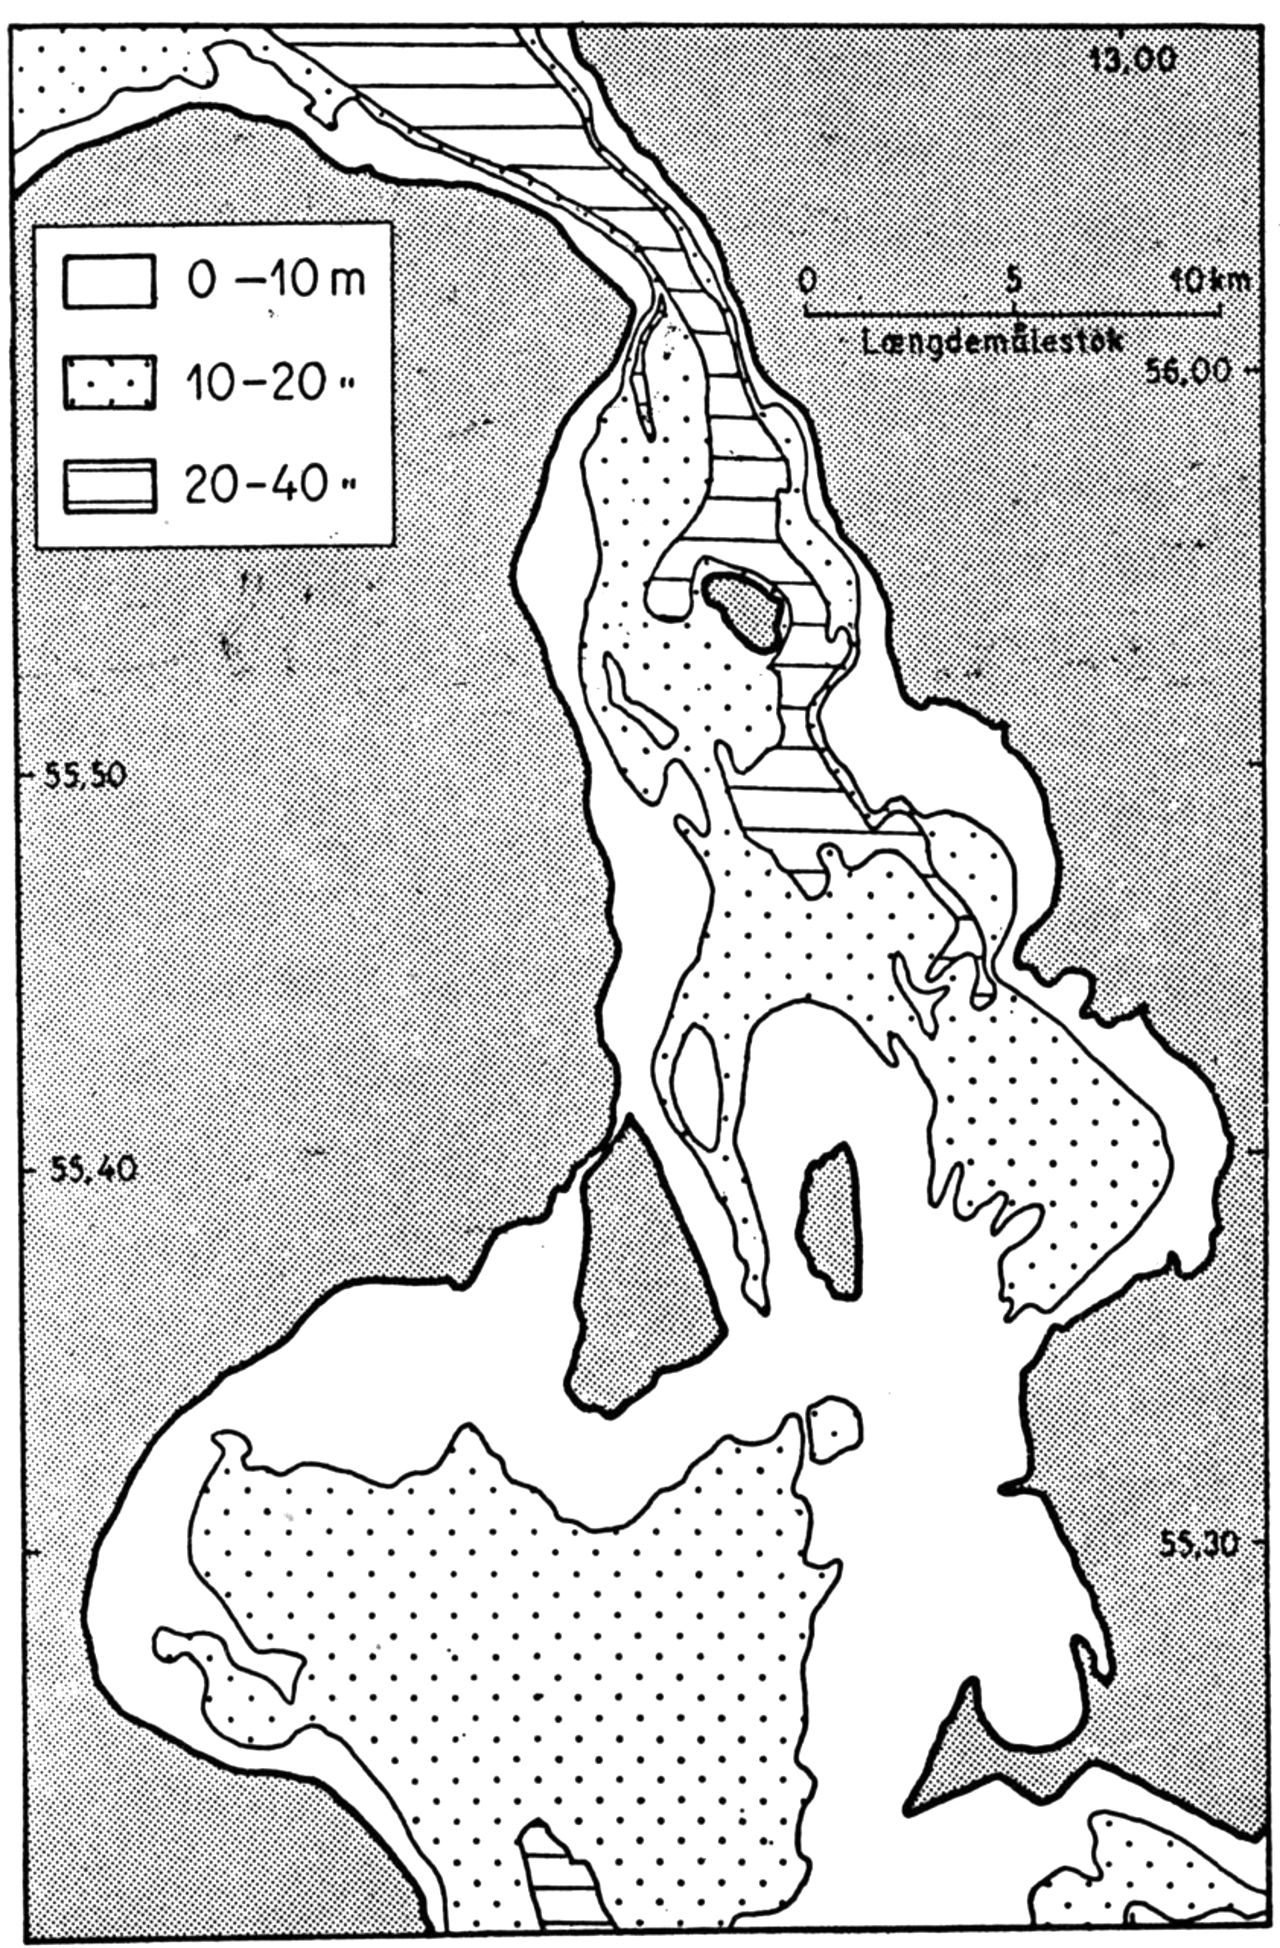 (Kort). Øresunds dybdeforhold.I Øresunds nordlige del fortsætter det østlige Kattegats store dybder gennem den 4 km brede snævring ved Helsingør og videre s.-på, ø. om Ven. Helt forskellige herfra er dybdeforholdene mellem Kbh. og Malmö, hvor øerne Amager og Saltholm deler Sundet op i 3 løb. Kalvebodstrand er lavvandet, lukket med sluse til regulering af vandstand i Kbh.s havn og nu delvis tørlagt ved inddæmning (se amtskortet). Drogden mellem Amager og Saltholm deles mod nord af Middelgrunden i Kongedyb og Hollænderdyb m. 10 m.s dybde; mod syd er en fyrmærket sejlrende kunstig uddybet til 8 m, og i Flinterende, øst for Saltholm er lign. dybde. For største delen af handelstonnagen er dybderne her tilstrækkelige, kun de allerstørste skibe må benytte Store Bælt som adgangsvej til Østersøen. For vandudvekslingen mellem Østersøen og Kattegat er denne tærskel imidlertid en væsentlig hindring. Det brakke vand fra Østersøen kan som overfladestrøm gå n.-på, medens Kattegats salte, tunge vand går som bundstrøm s.-på, hovedsagelig gennem Bælterne. Øresund afgrænses m. n. af linien Gilbjerg Hoved–Kullen og m. s. af linien Stevns fyr–Falsterbo pynt.Geogr. Lab. del.